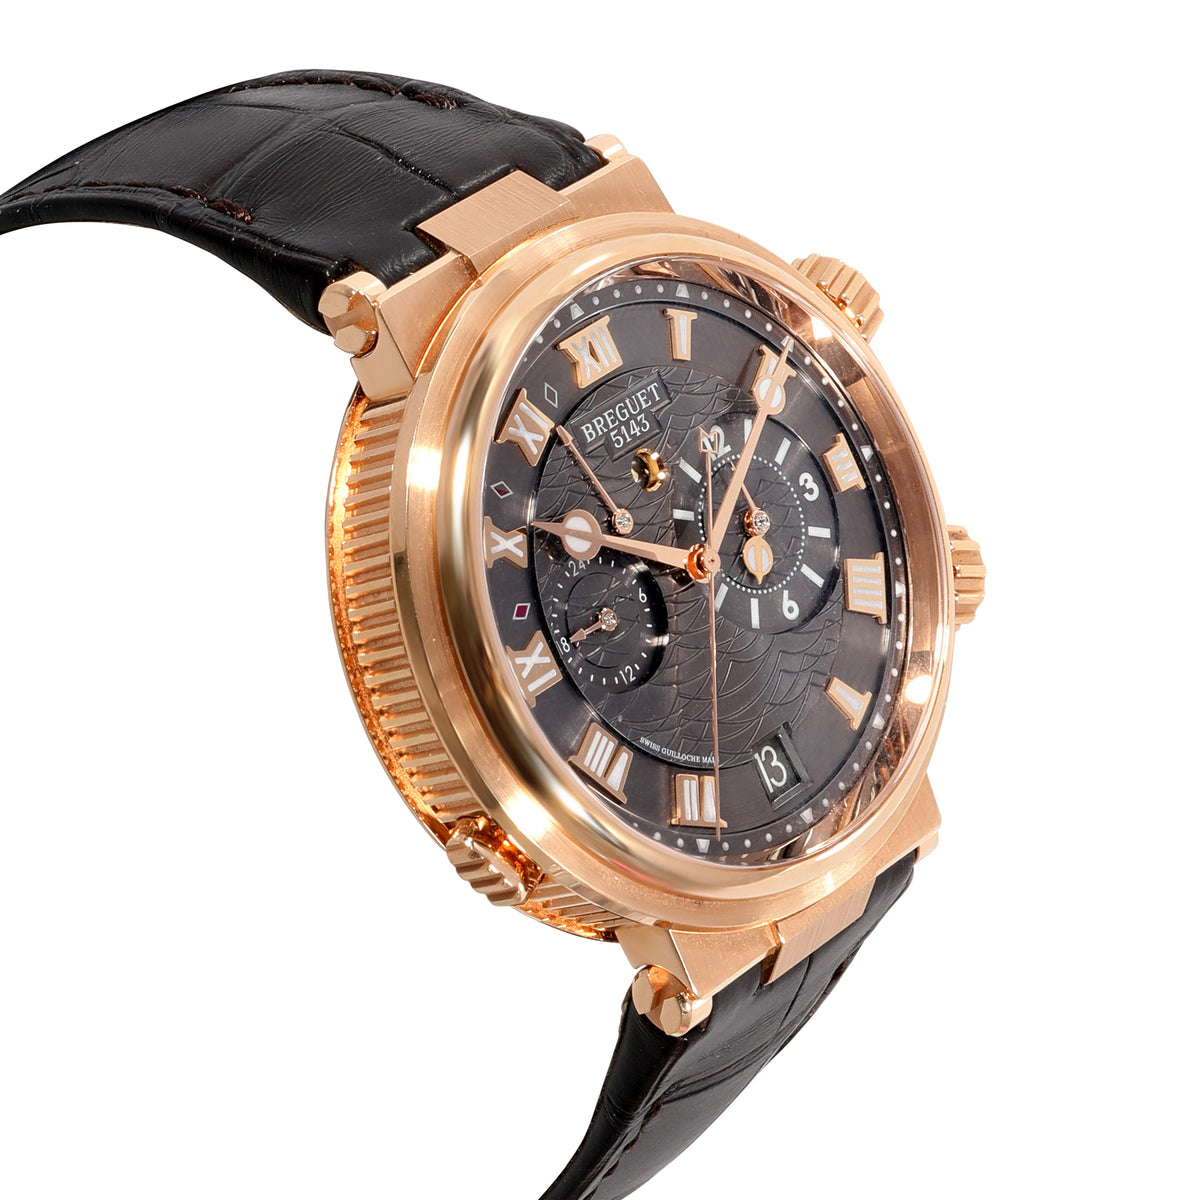 Breguet Marine Alarme Musicale 5547BR/G39ZU Men's Watch in 18kt Rose Gold